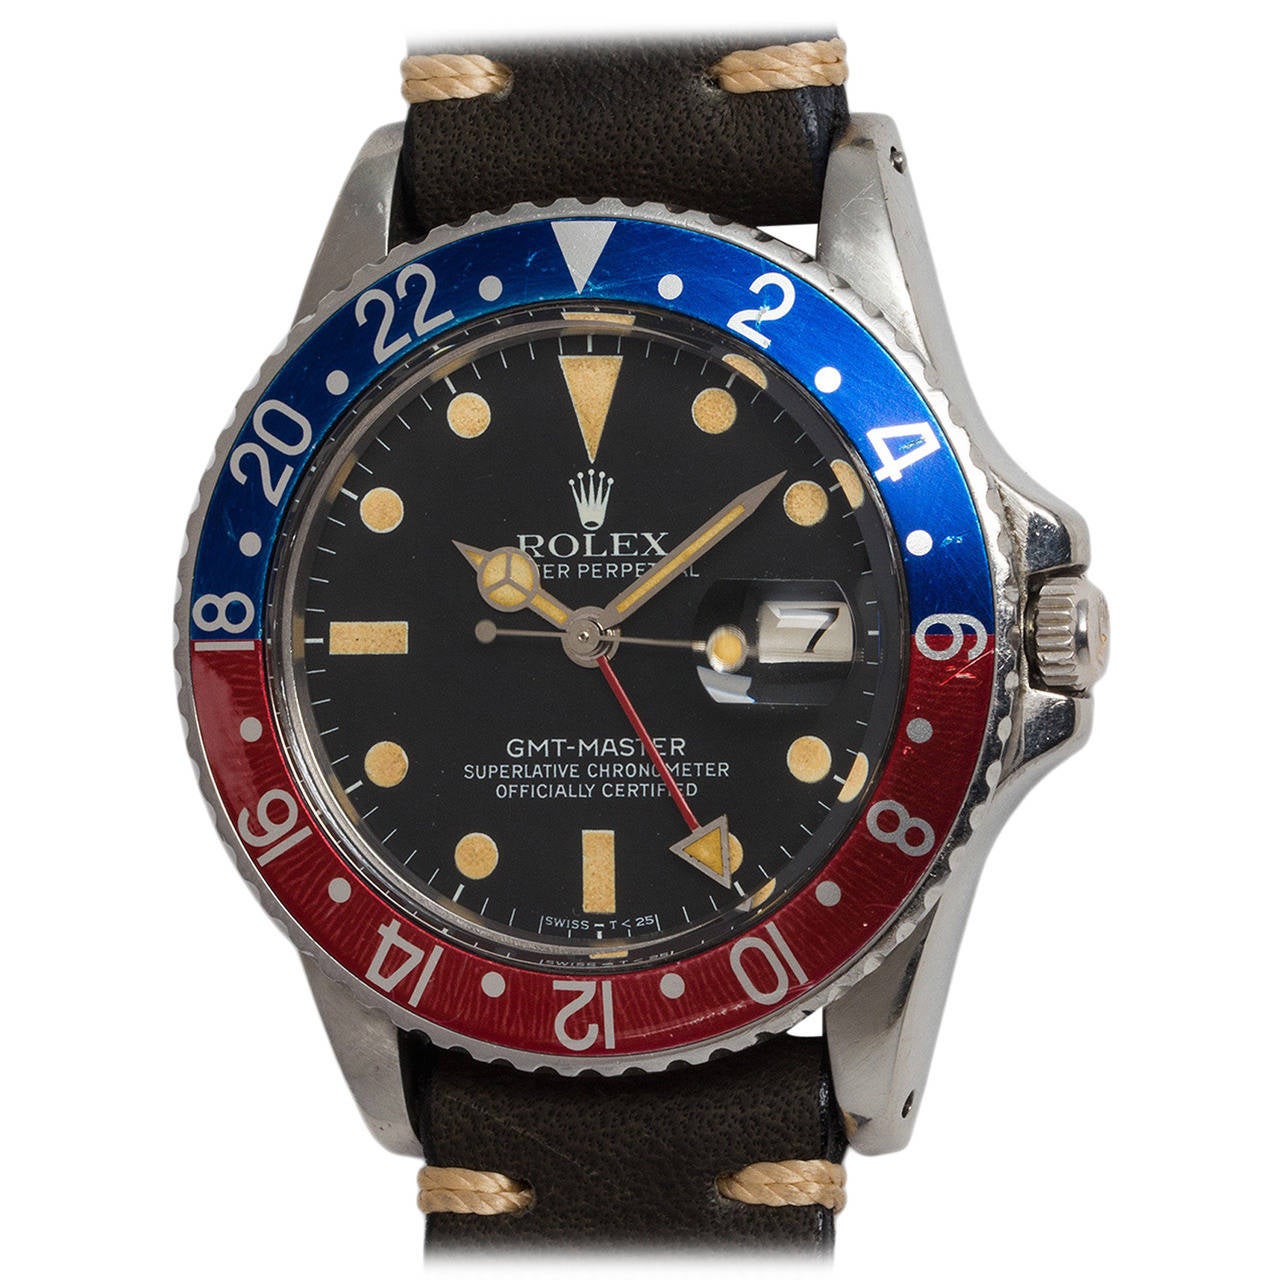 Rolex Stainless Steel GMT-Master Chronometer Wristwatch Ref 16750